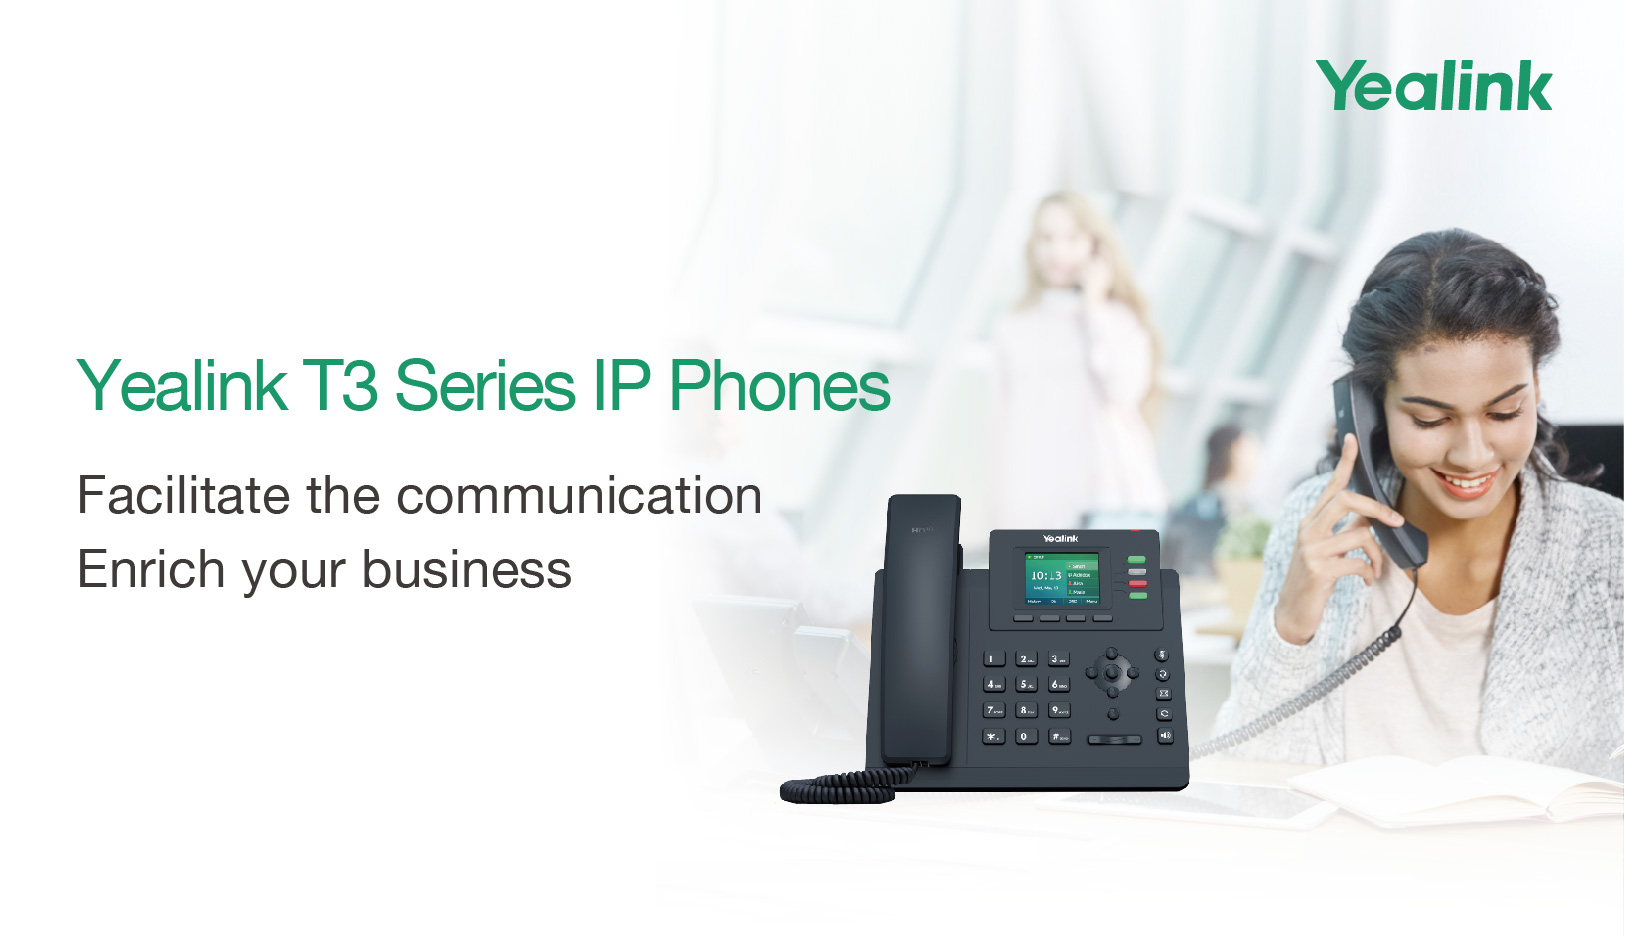 ผลิตภัณฑ์ใหม่ของ Yealink: โทรศัพท์ IP ของ Yealink T3 Series